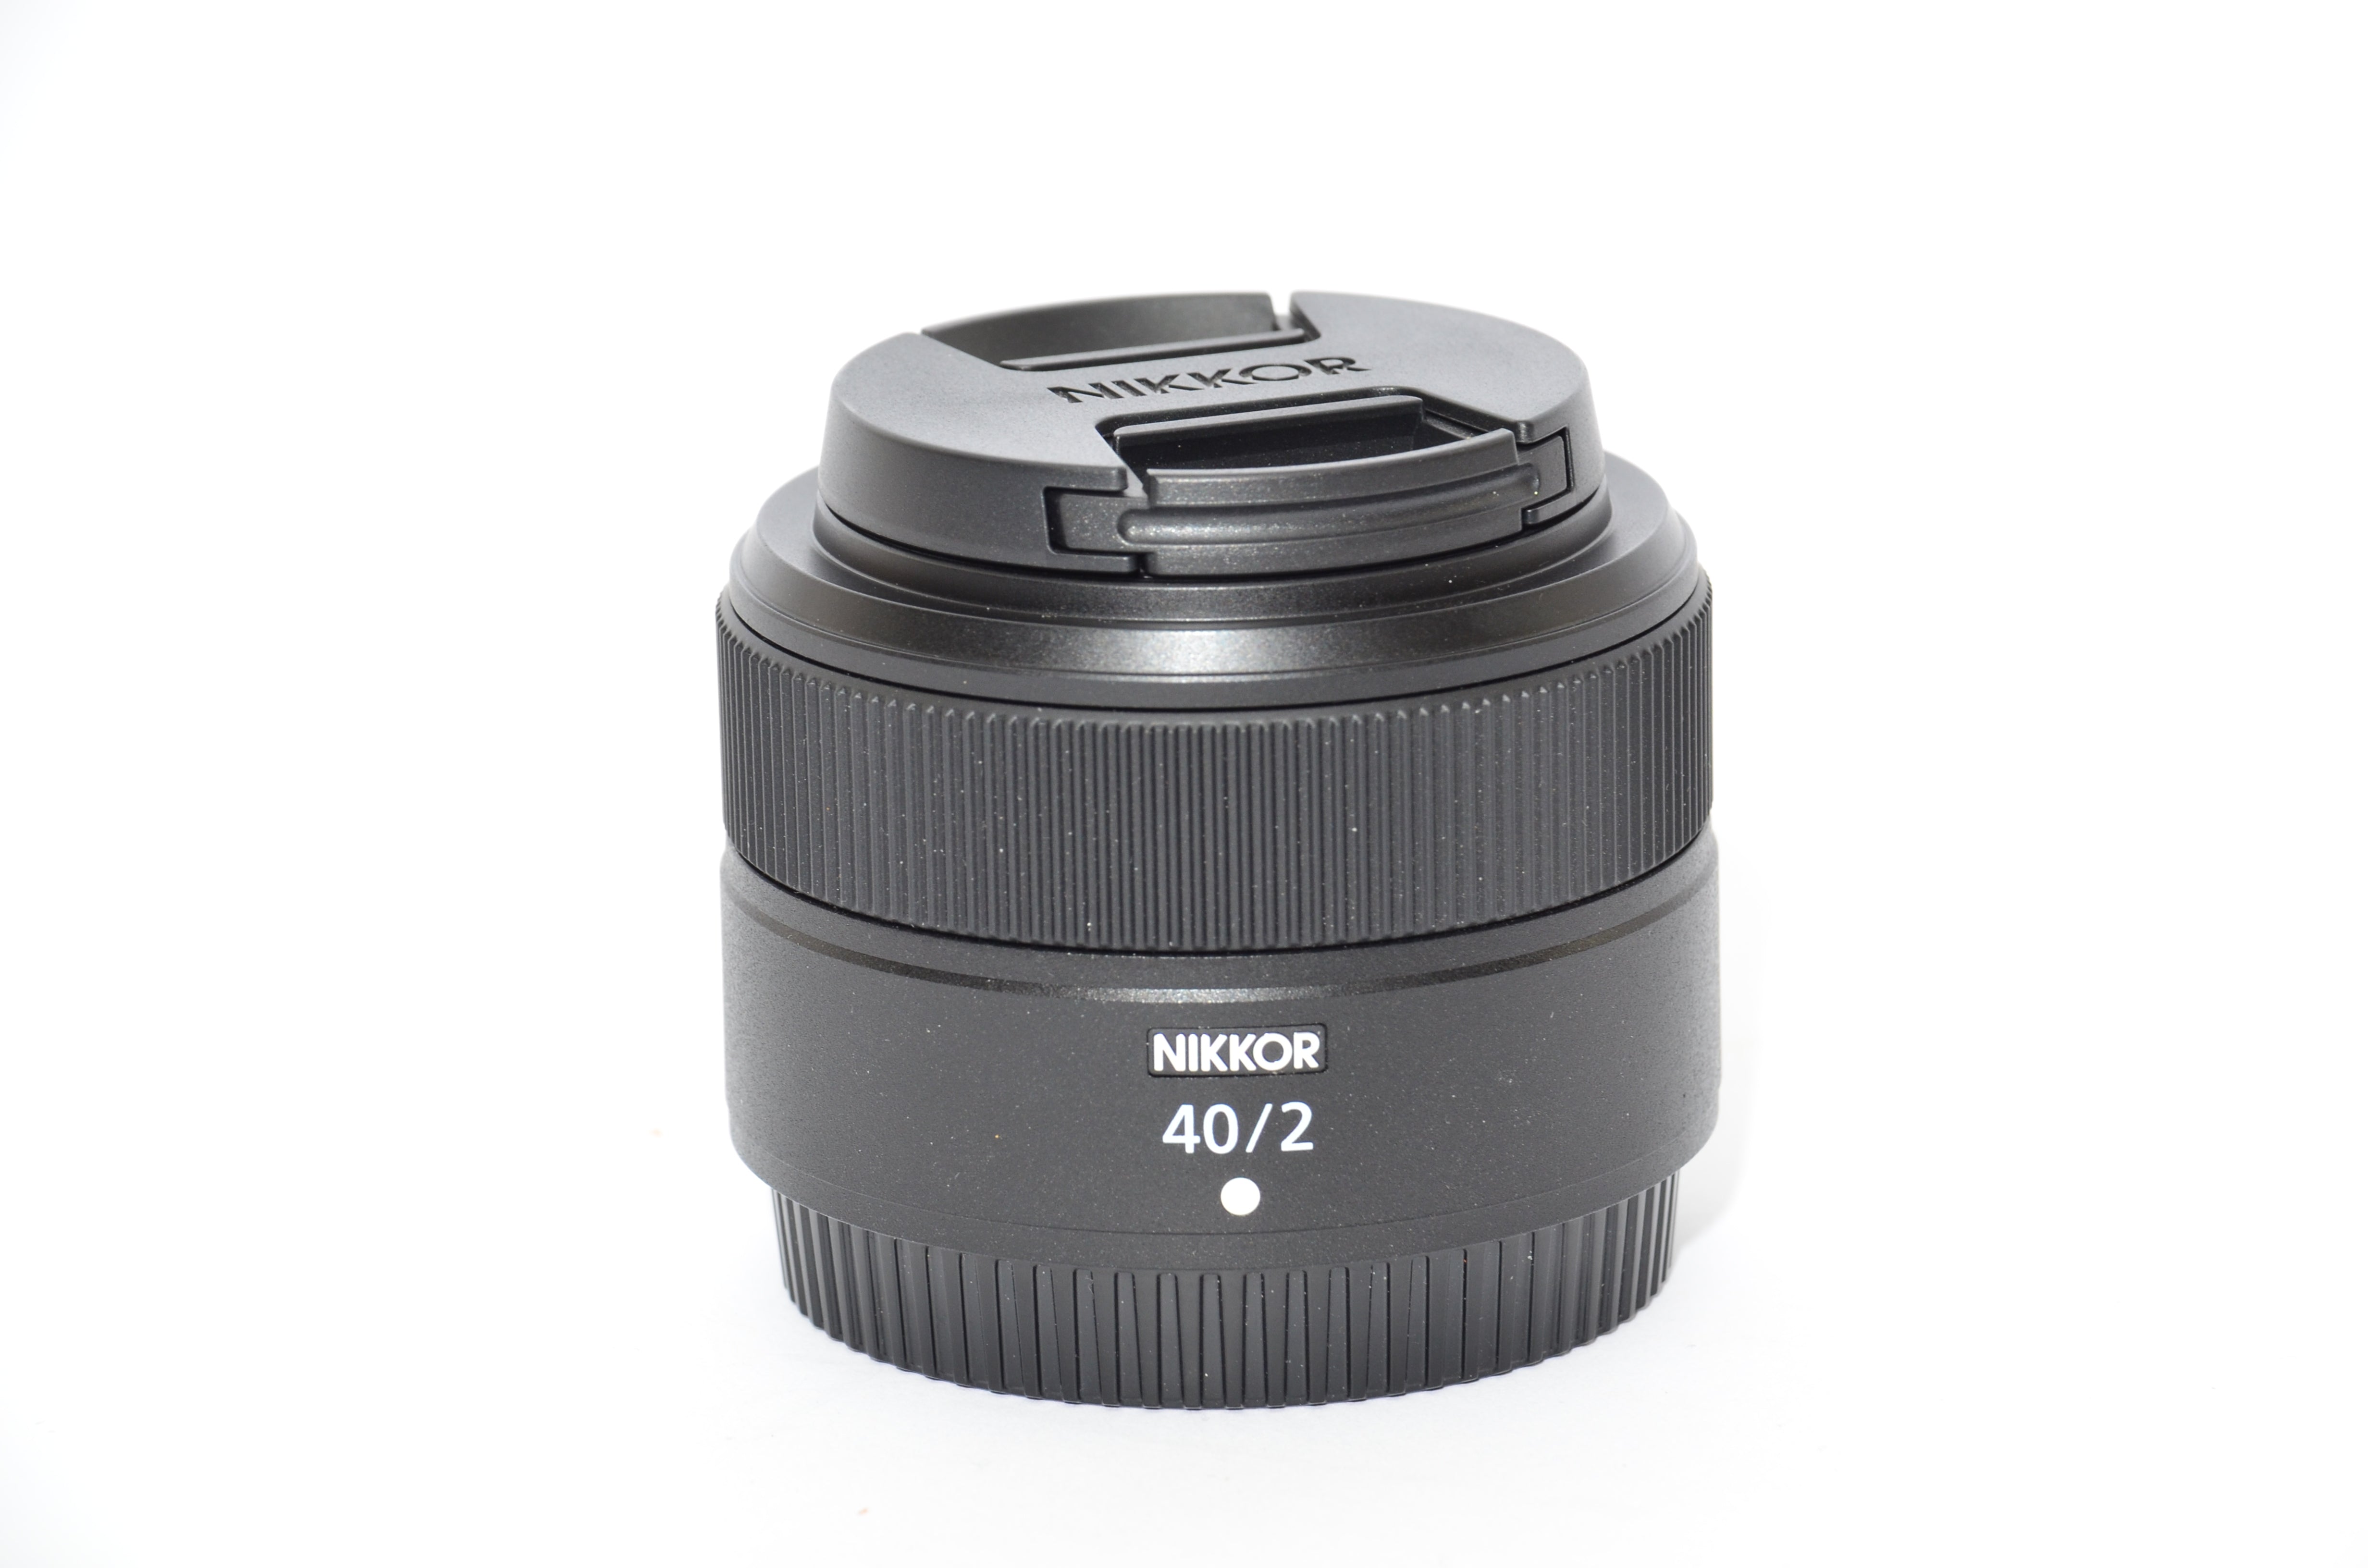 Used Nikon Nikkor Z 40mm f/2 Lens